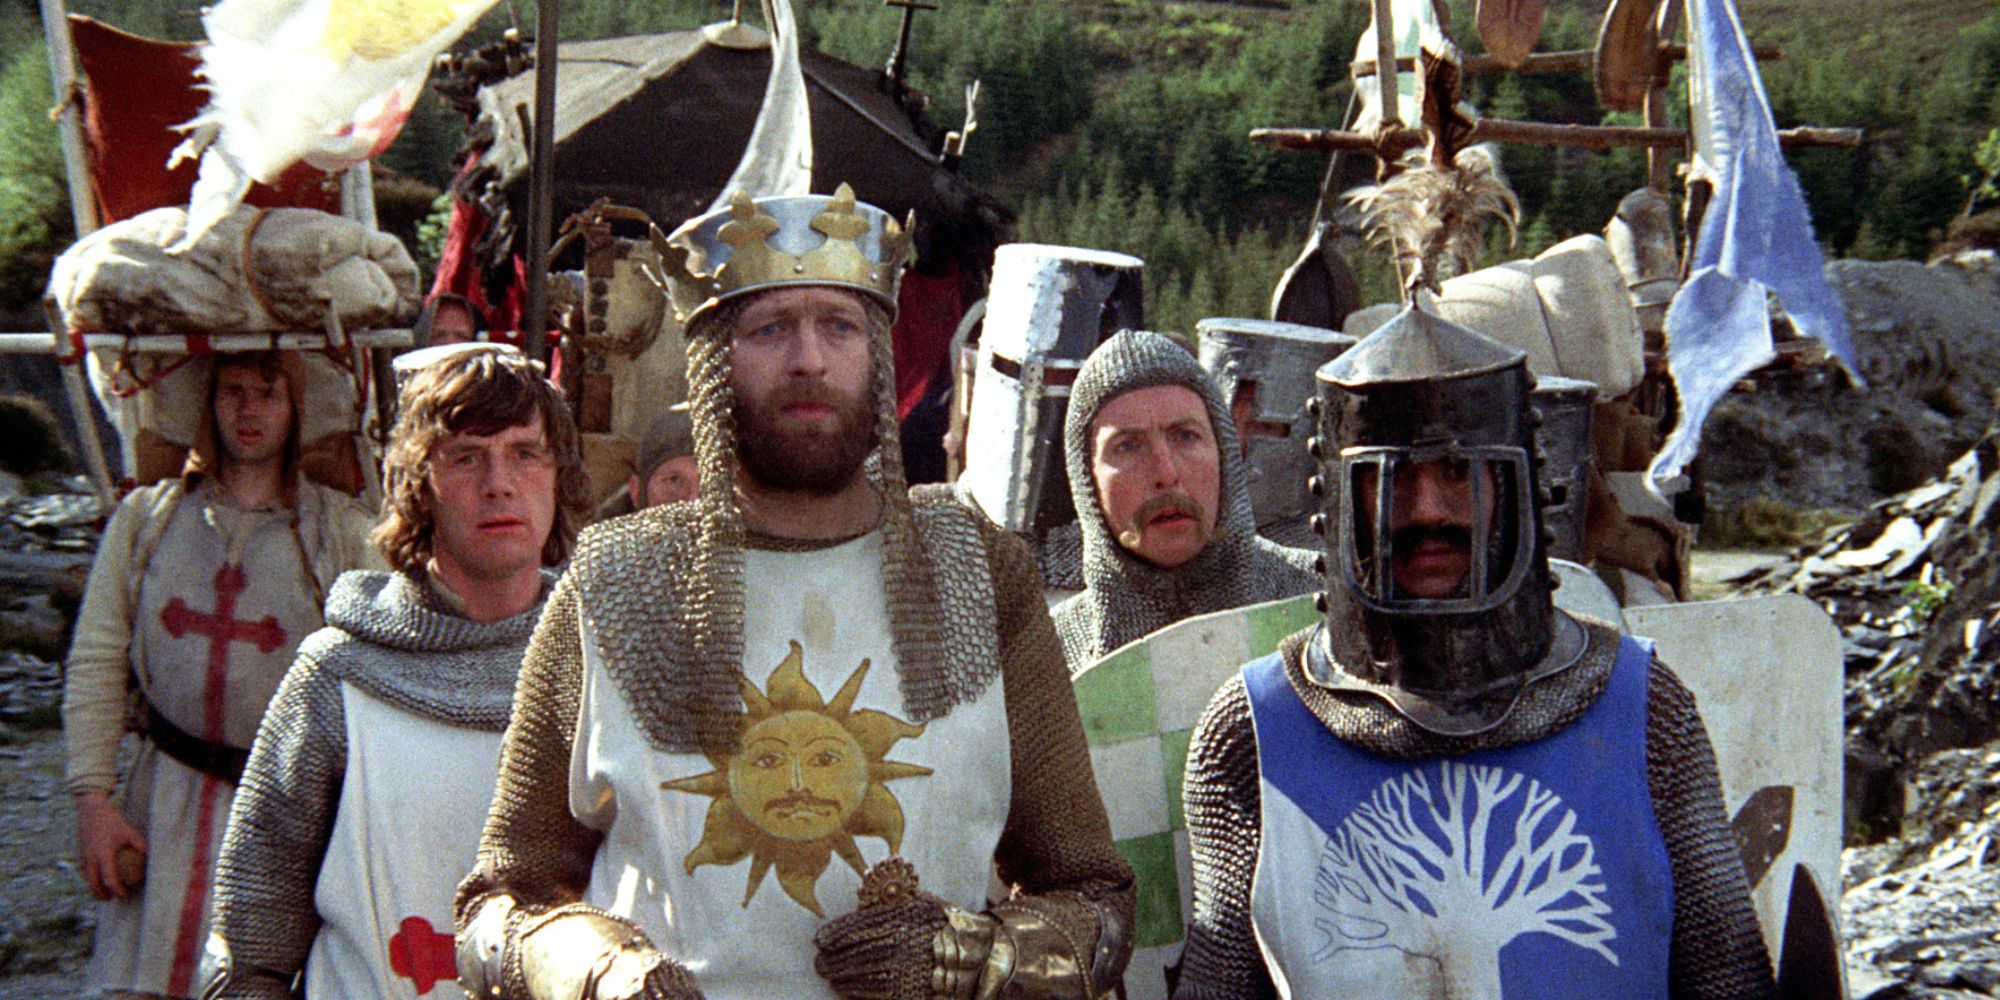 جراهام تشابمان في فيلم 'Monty Python and the Holy Grail'